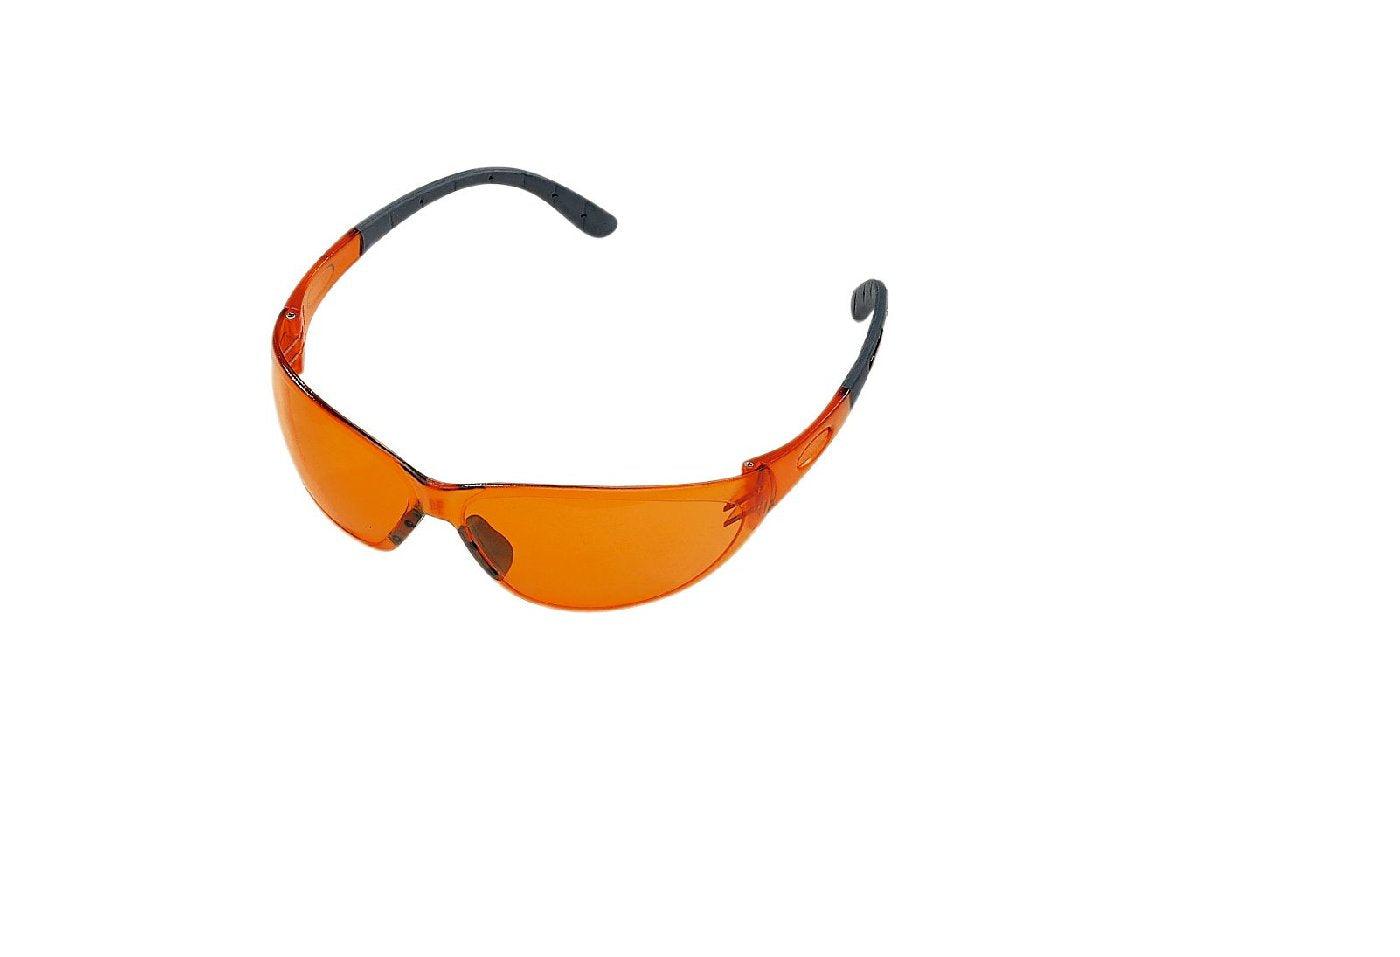 STIHL Schutzbrille Contrast,  in starkem orange - MotorLand.at